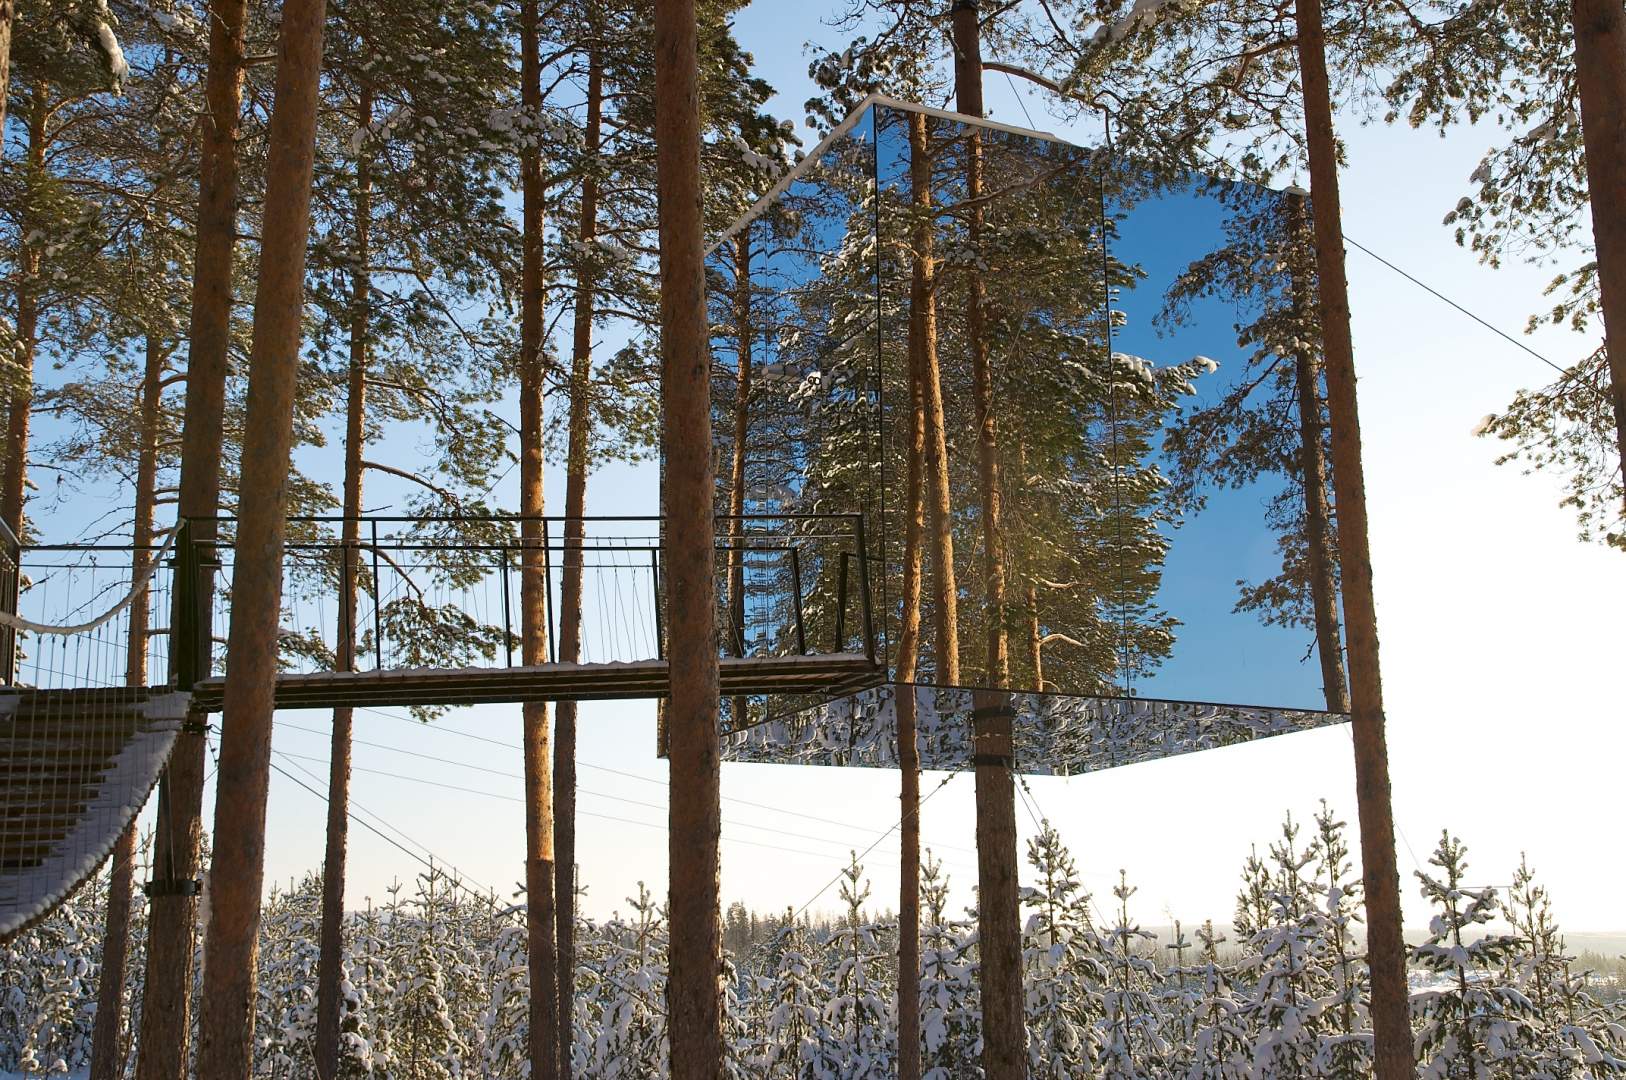 این هتل از خانه های درختی درست شده است که اتاق های آن شبیه کپسول های شیشه ای هستند